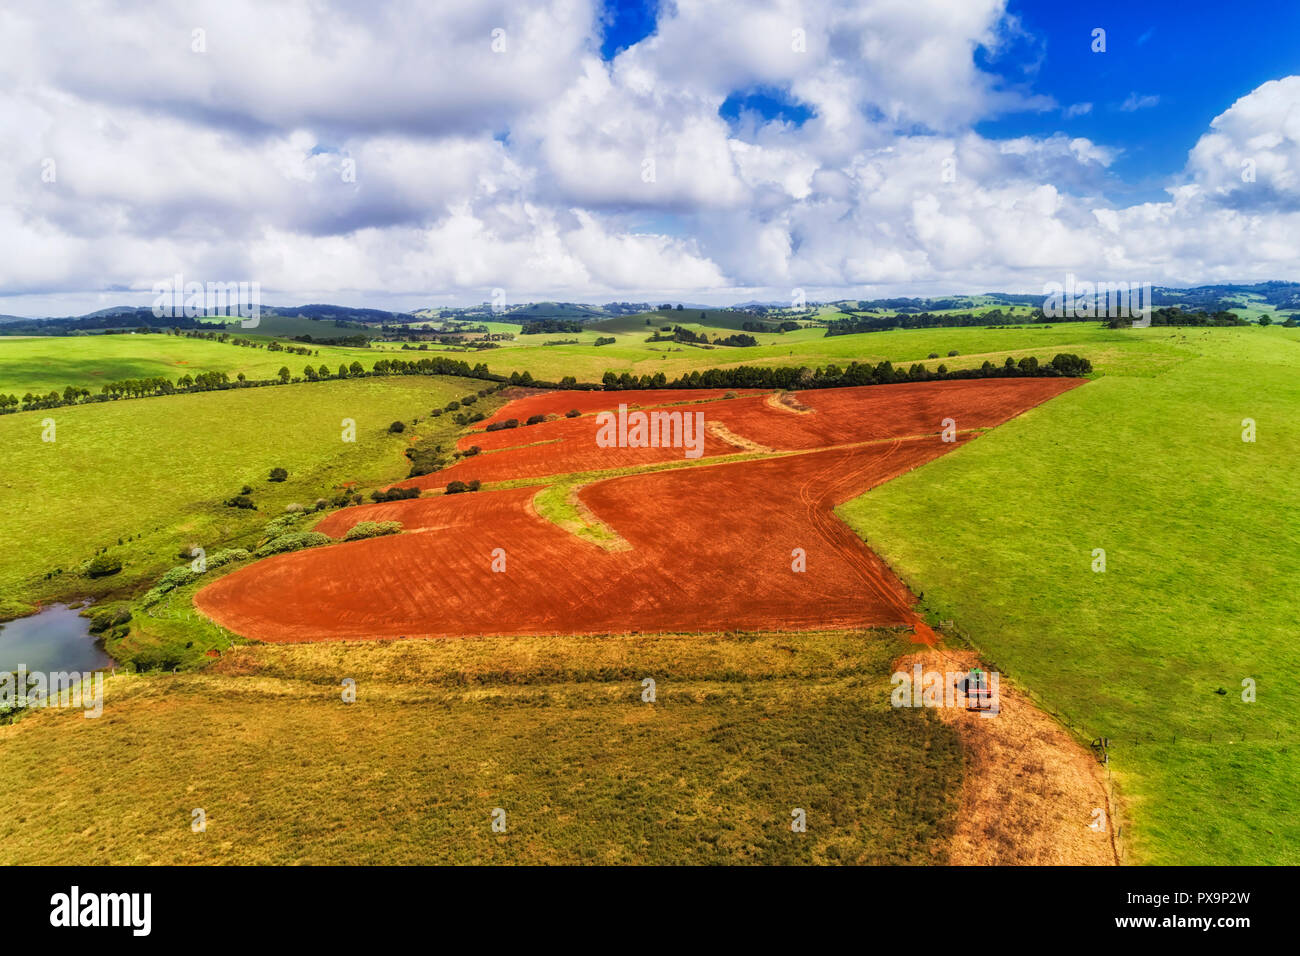 Il trattore funziona in un campo rosso sul suolo australiano su una collina nei pressi di verdi pascoli coltivati intorno Dorrigo regionale città agricola in NSW. Foto Stock